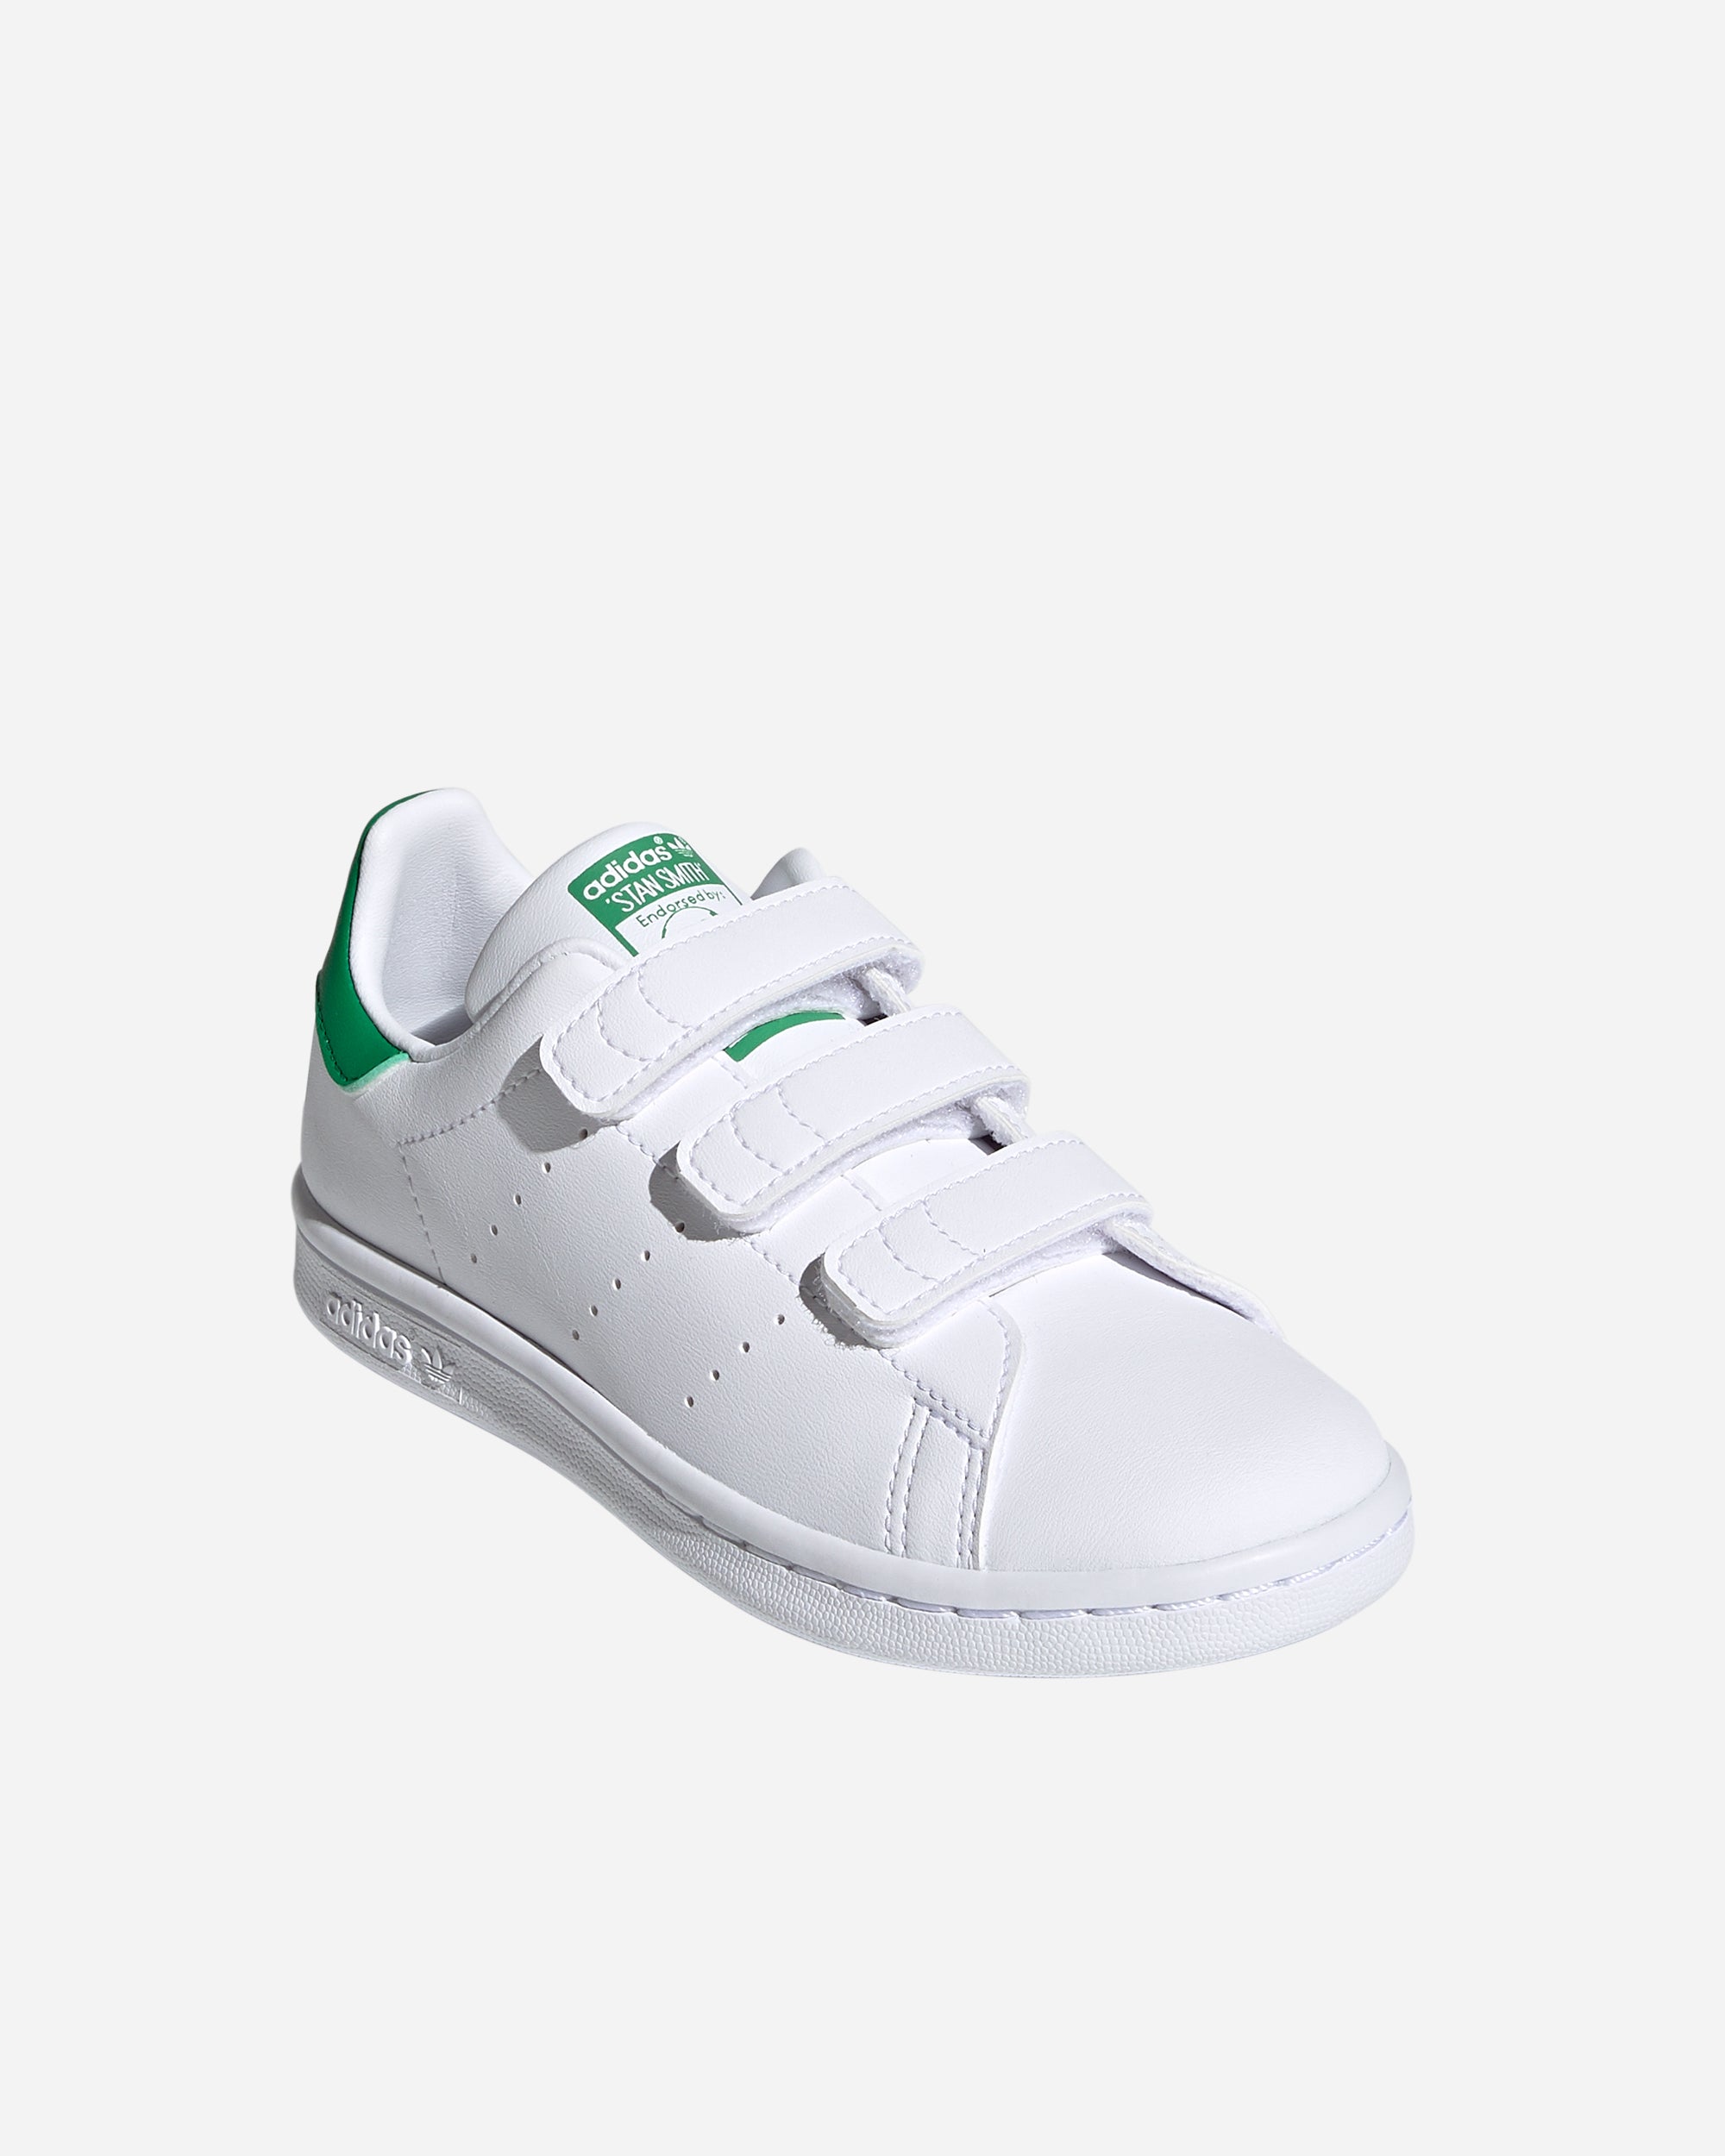 Adidas Ori Stan Smith CF (Preschool) White FX7534